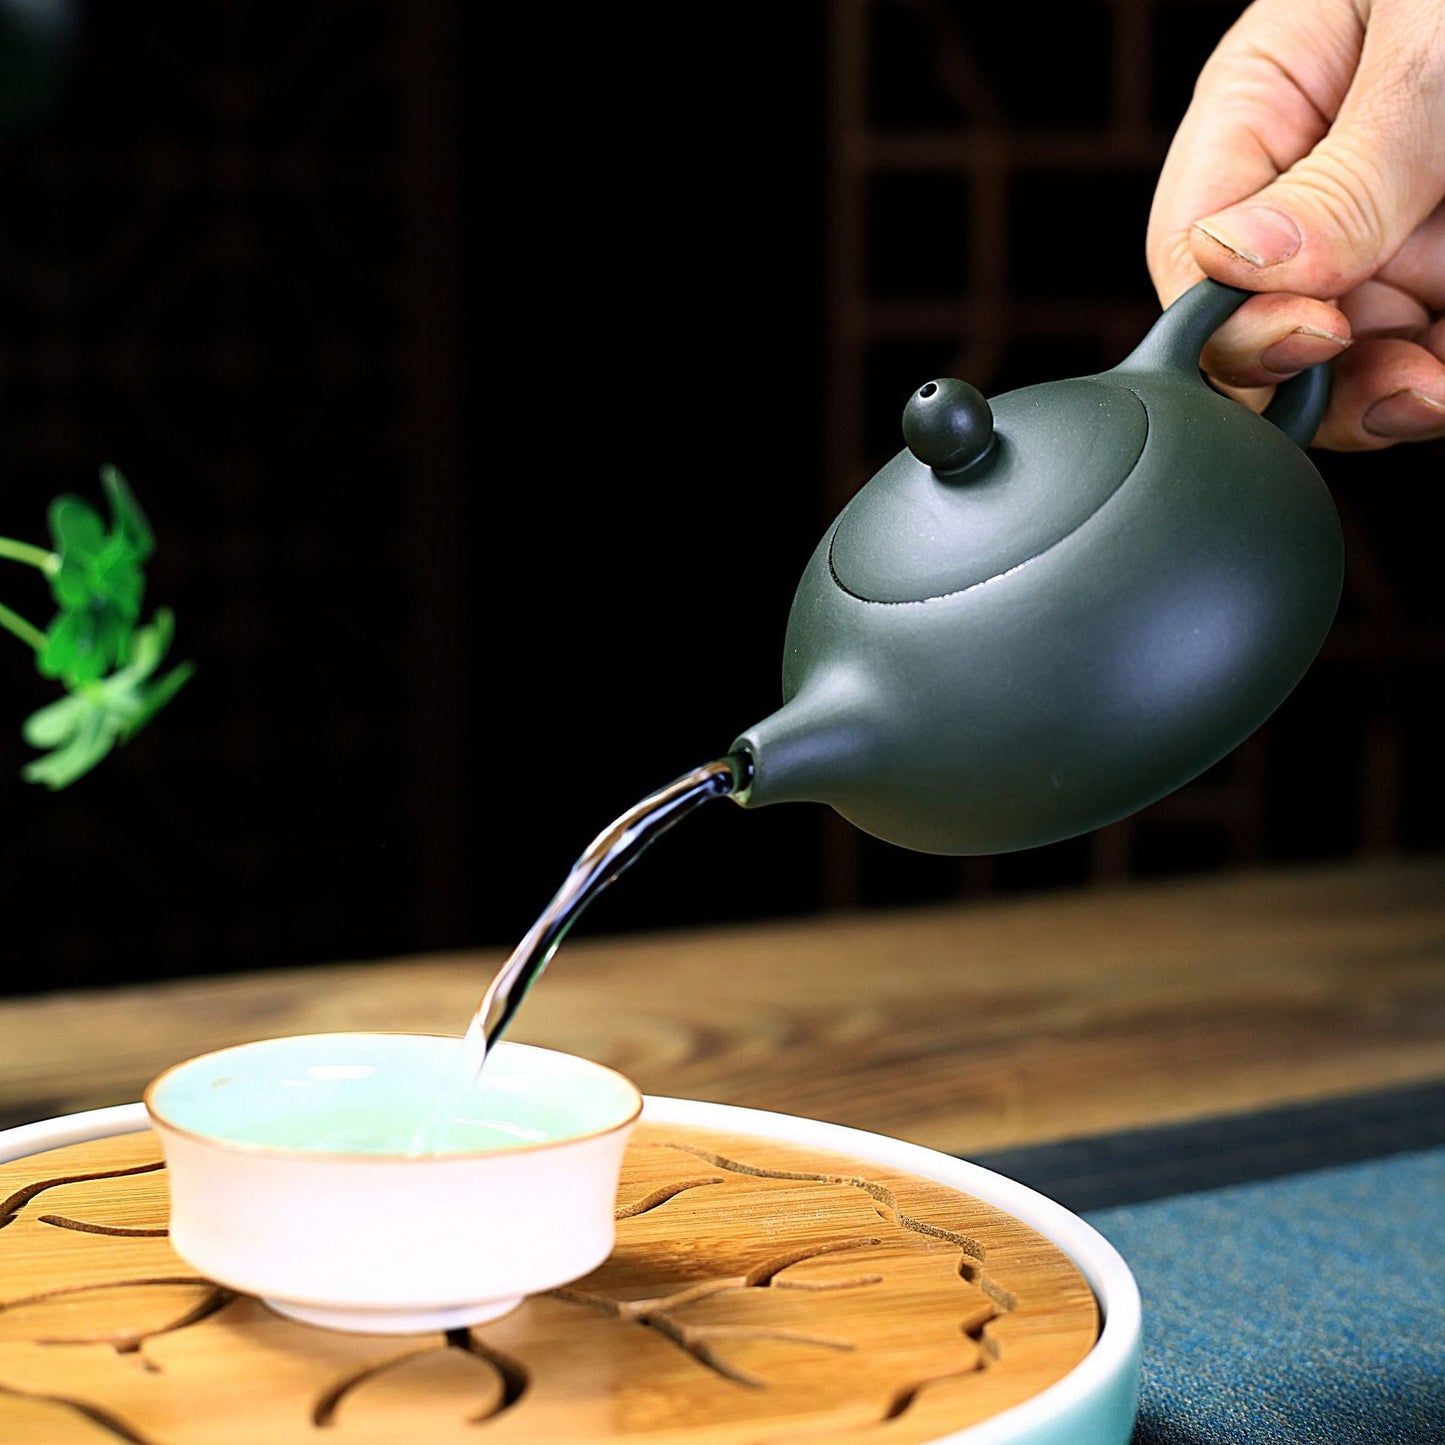 200 ml auténtico yixing de té hechas a mano tetera morada tetera belleza hervidor de té té de té de té de té chino regalos